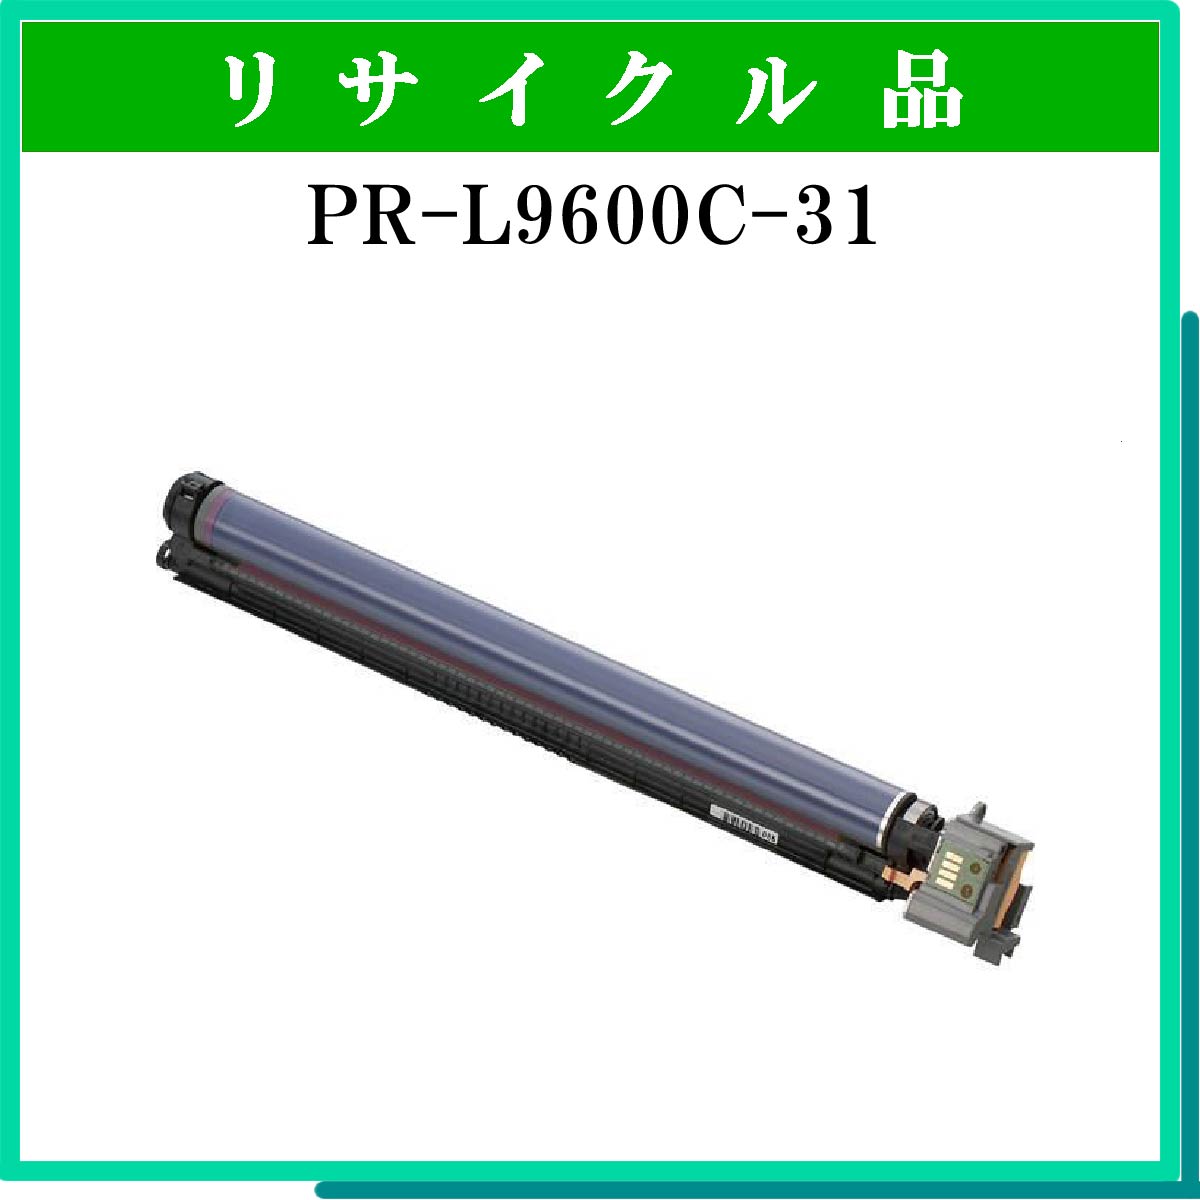 PR-L9600C-31